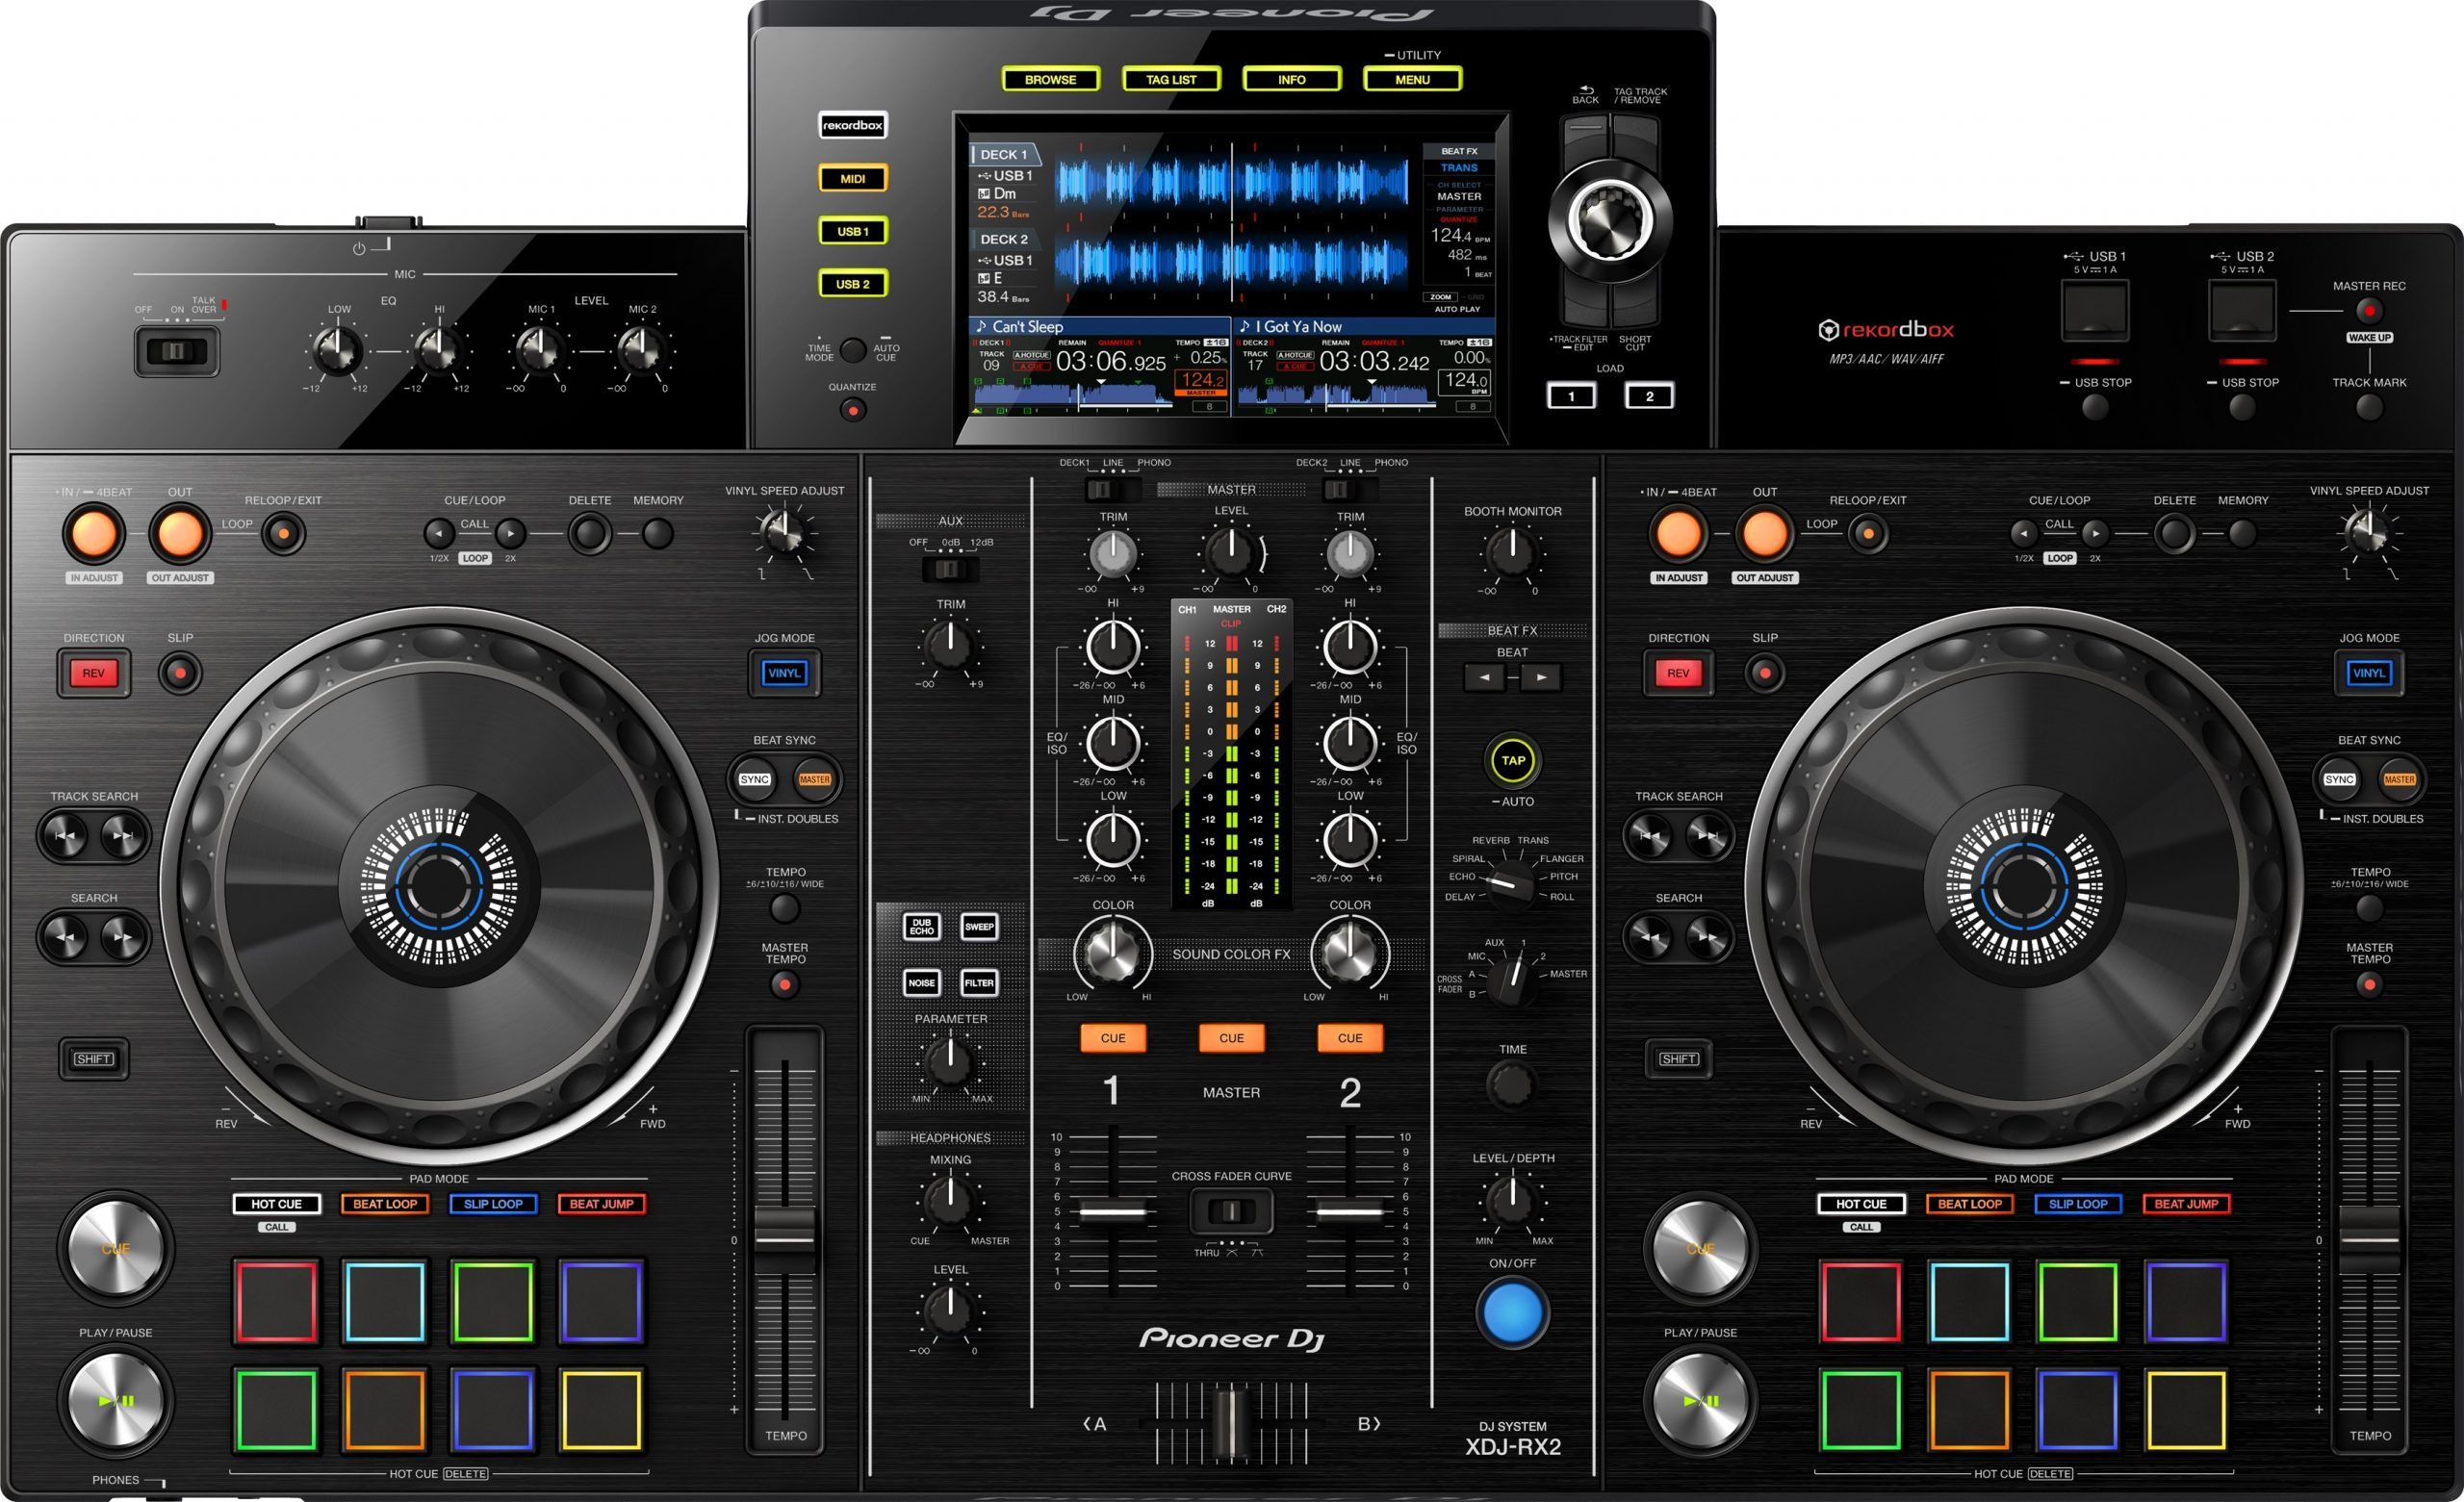 NEW Pioneer DJ XDJ-RX2 2-Channel Rekordbox DJ Controller - XDJ RX2 scaled 6c20da87